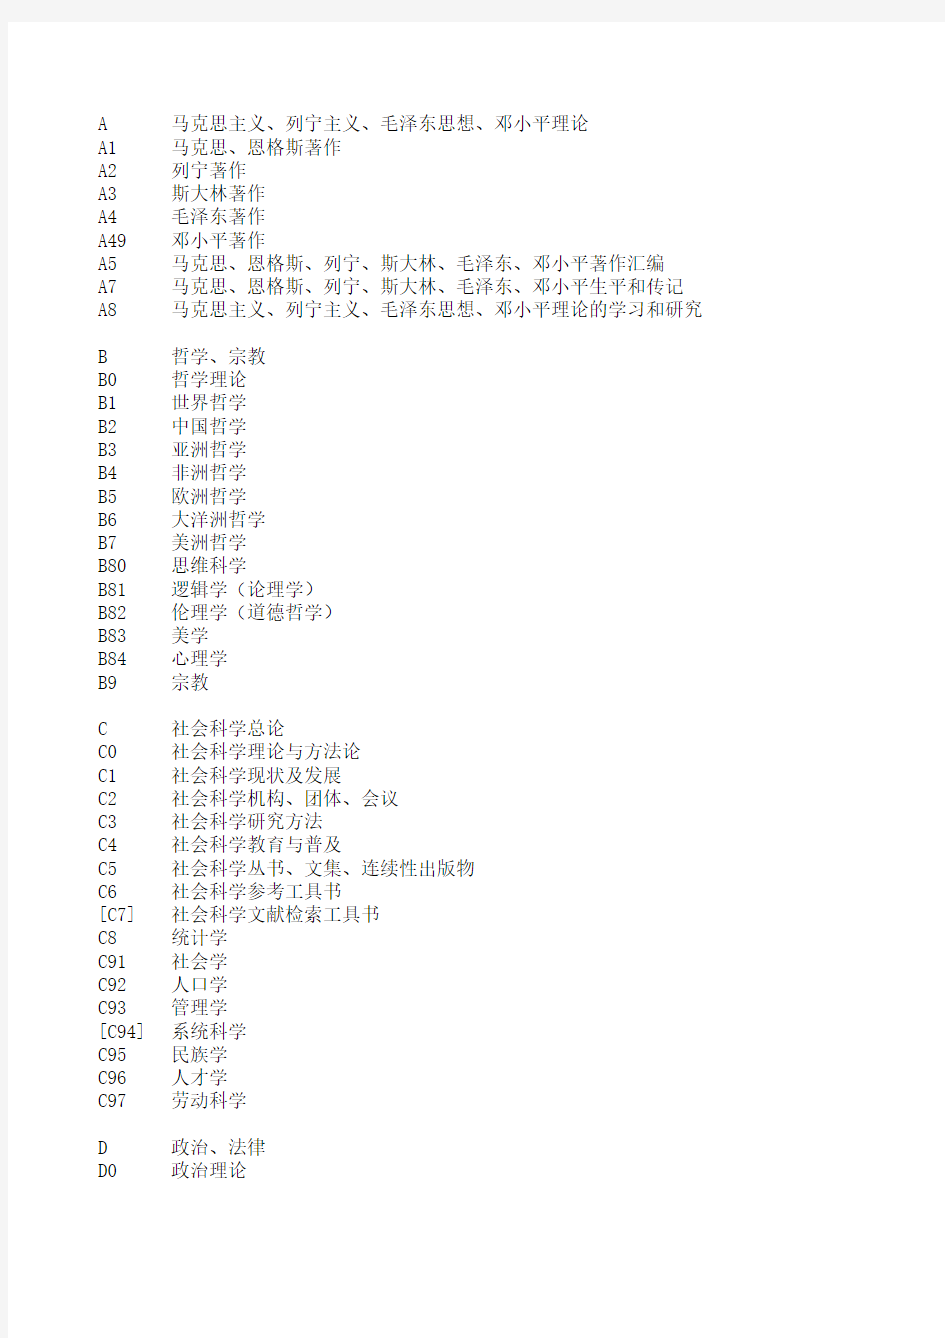 中国图书馆分类法简表(第四版)